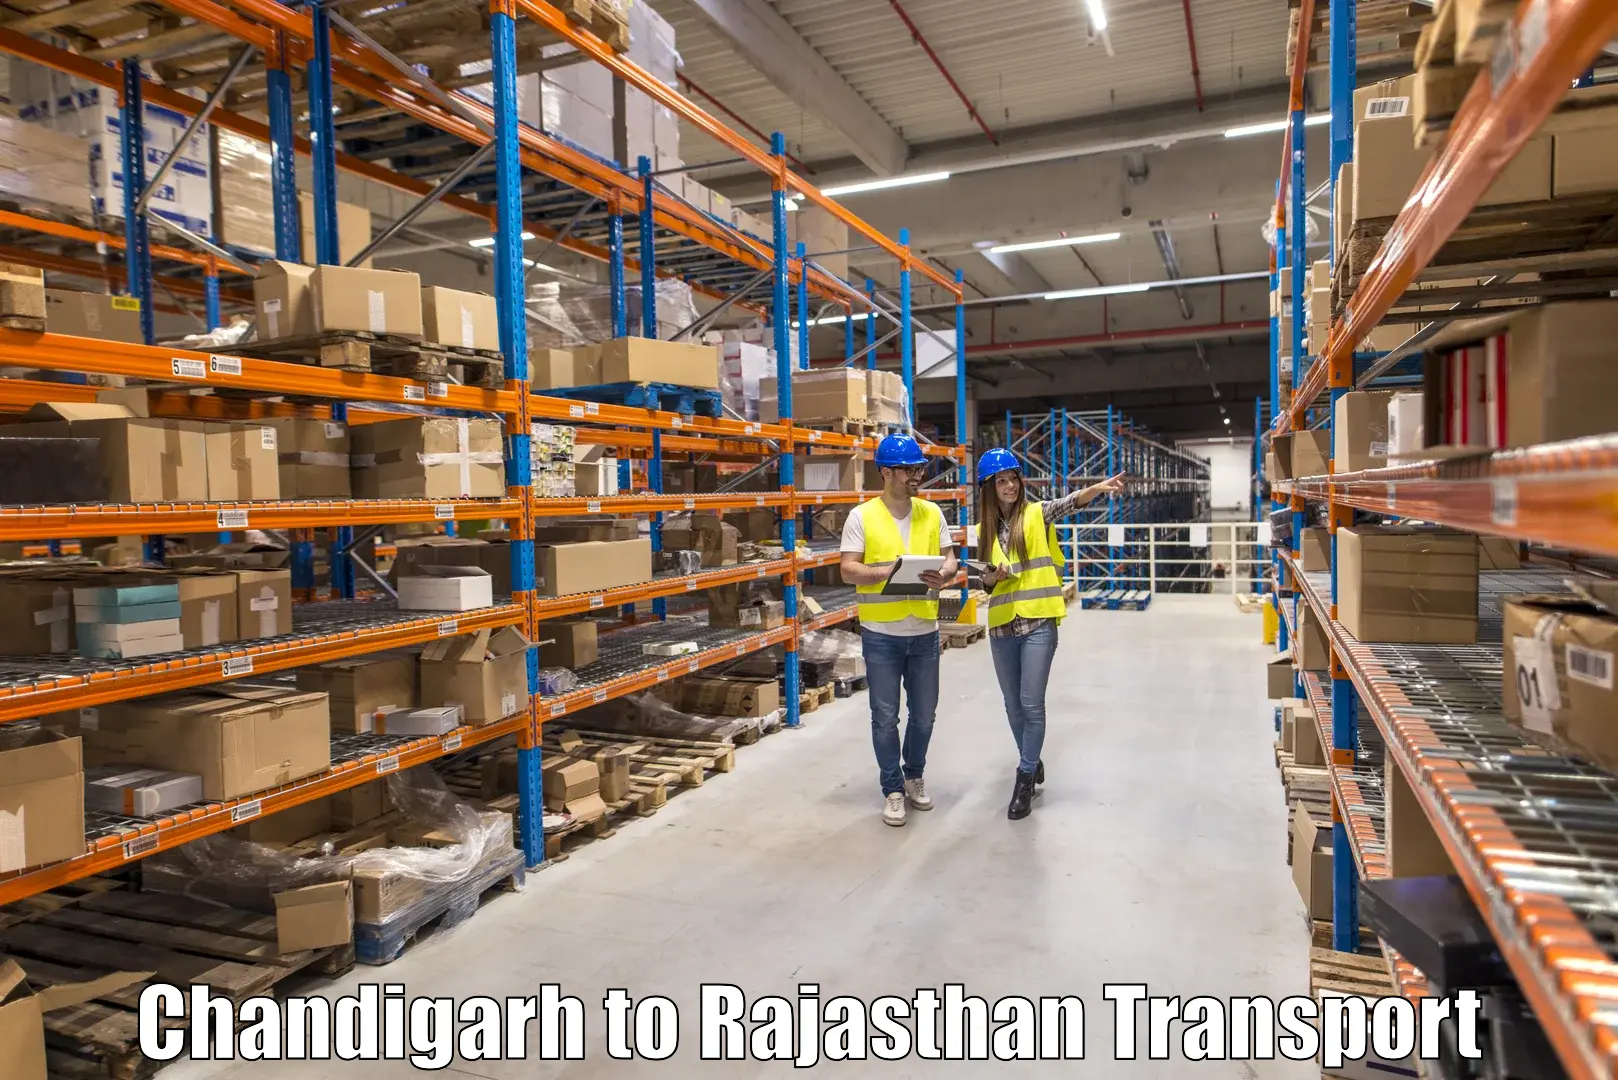 Two wheeler parcel service Chandigarh to Jaisalmer